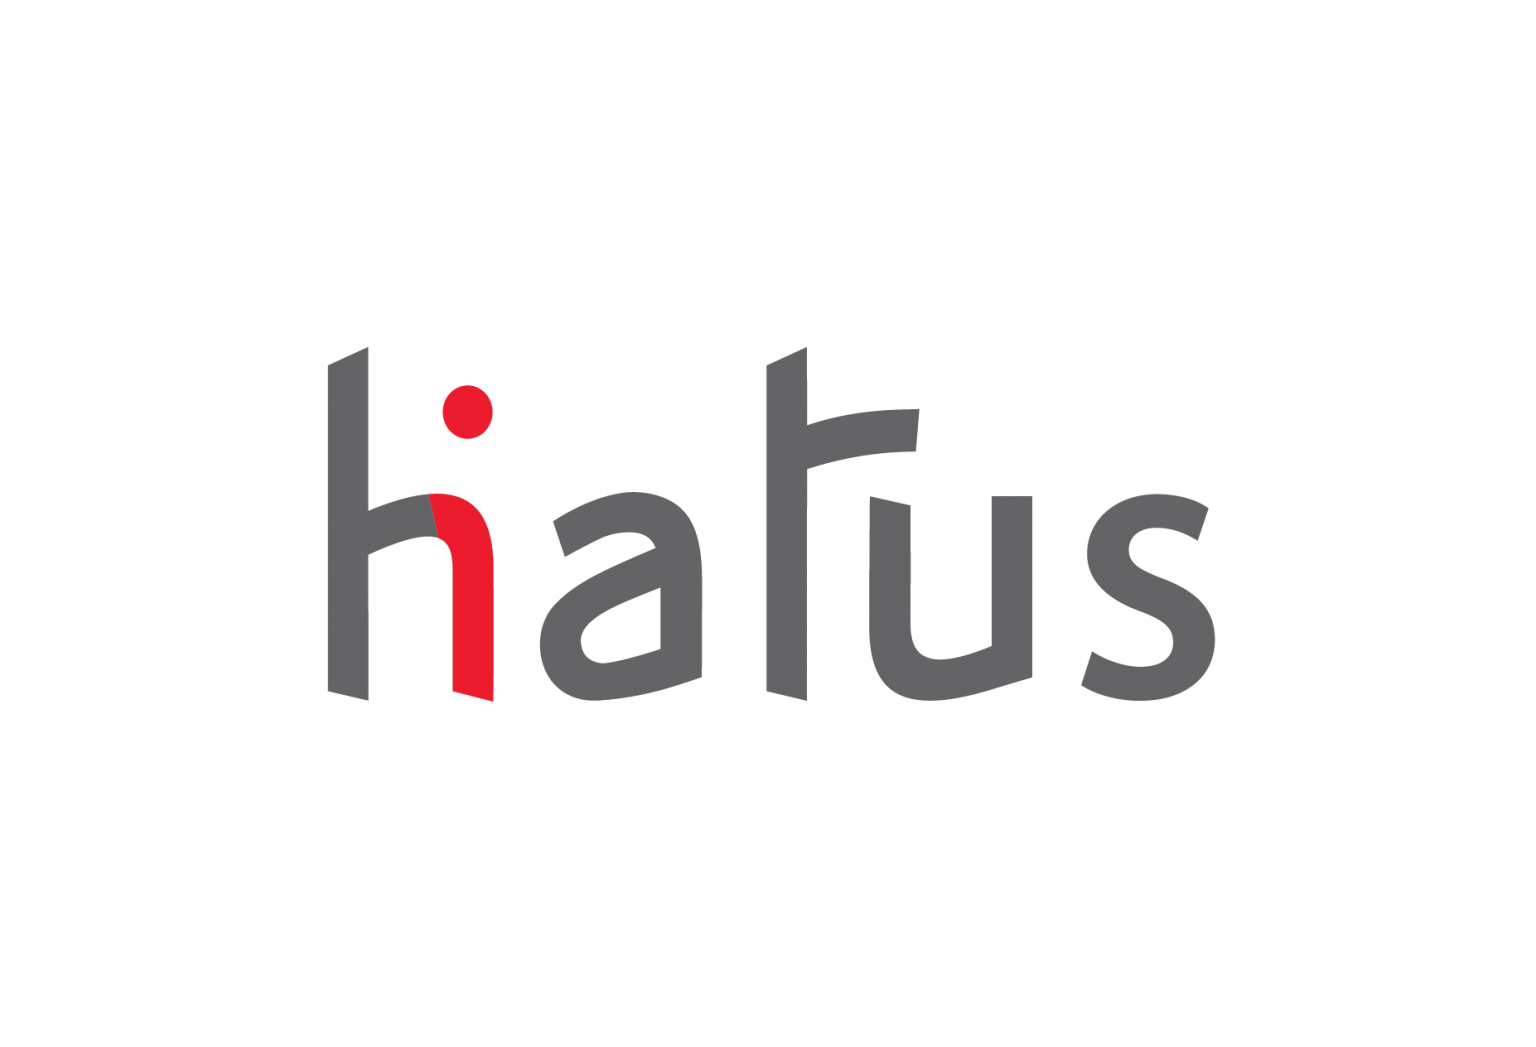 HIATUS-logo-2-01-3.png